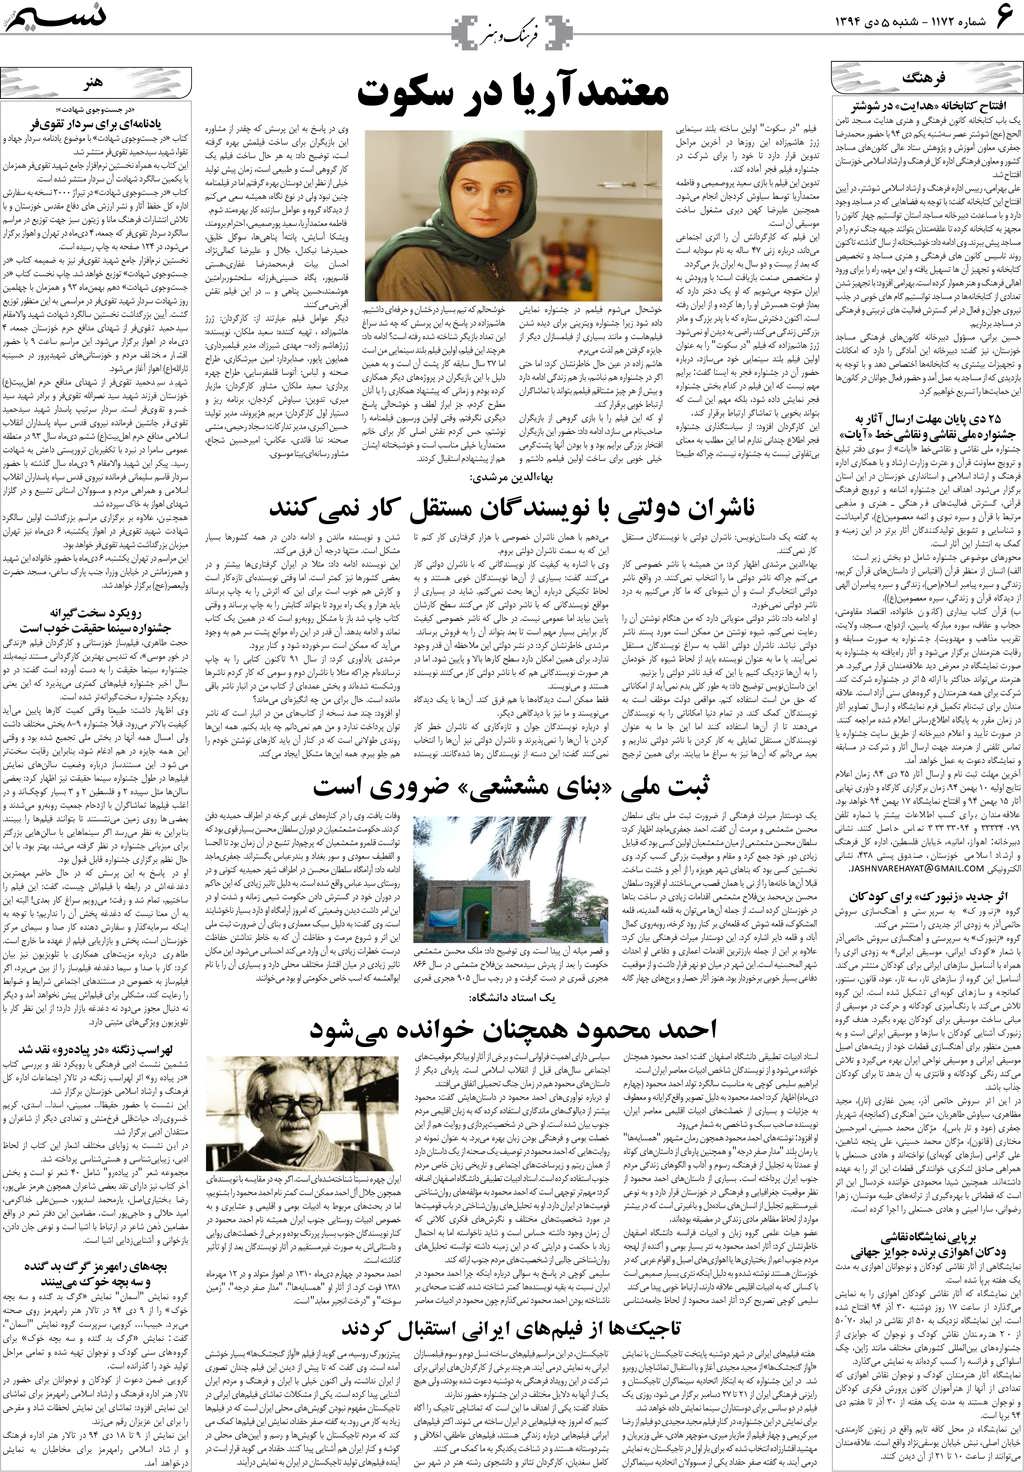 صفحه فرهنگ و هنر روزنامه نسیم شماره 1172